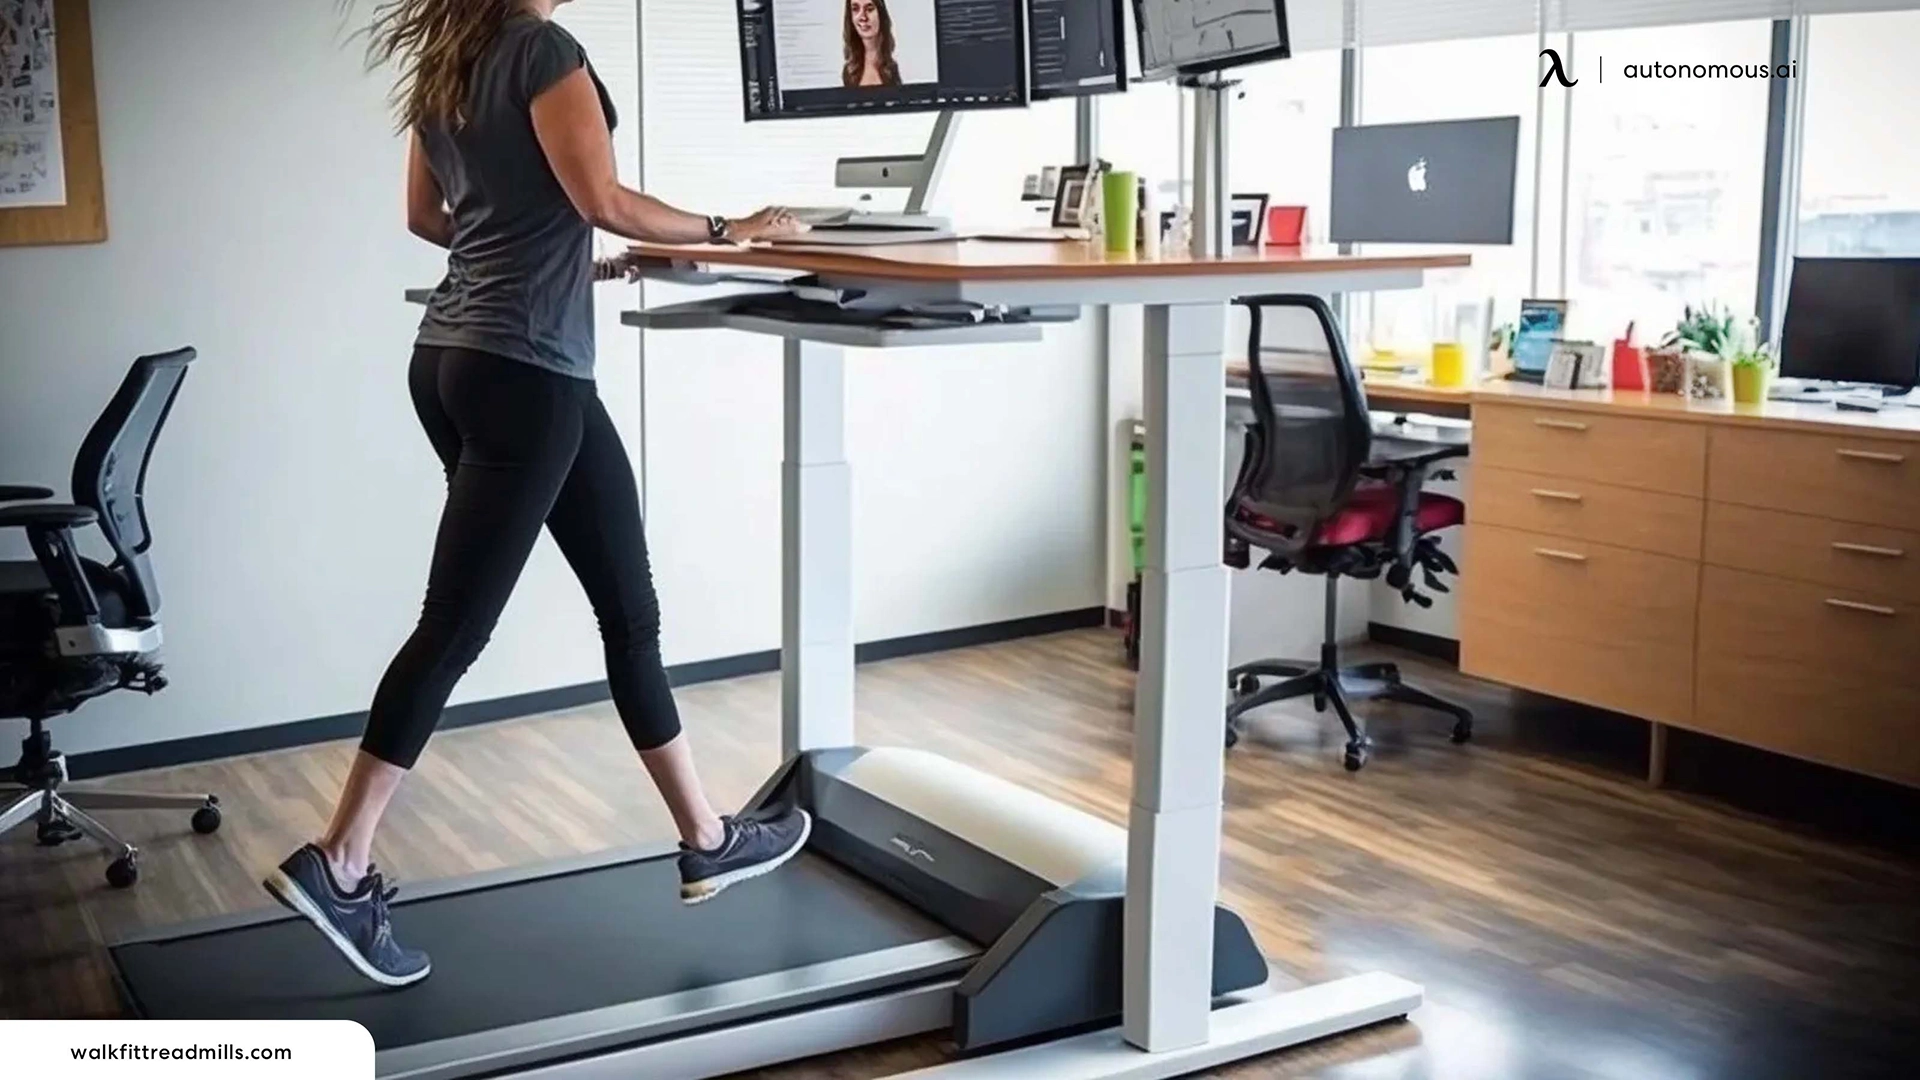 Diminishes Laziness - Walking desk benefits